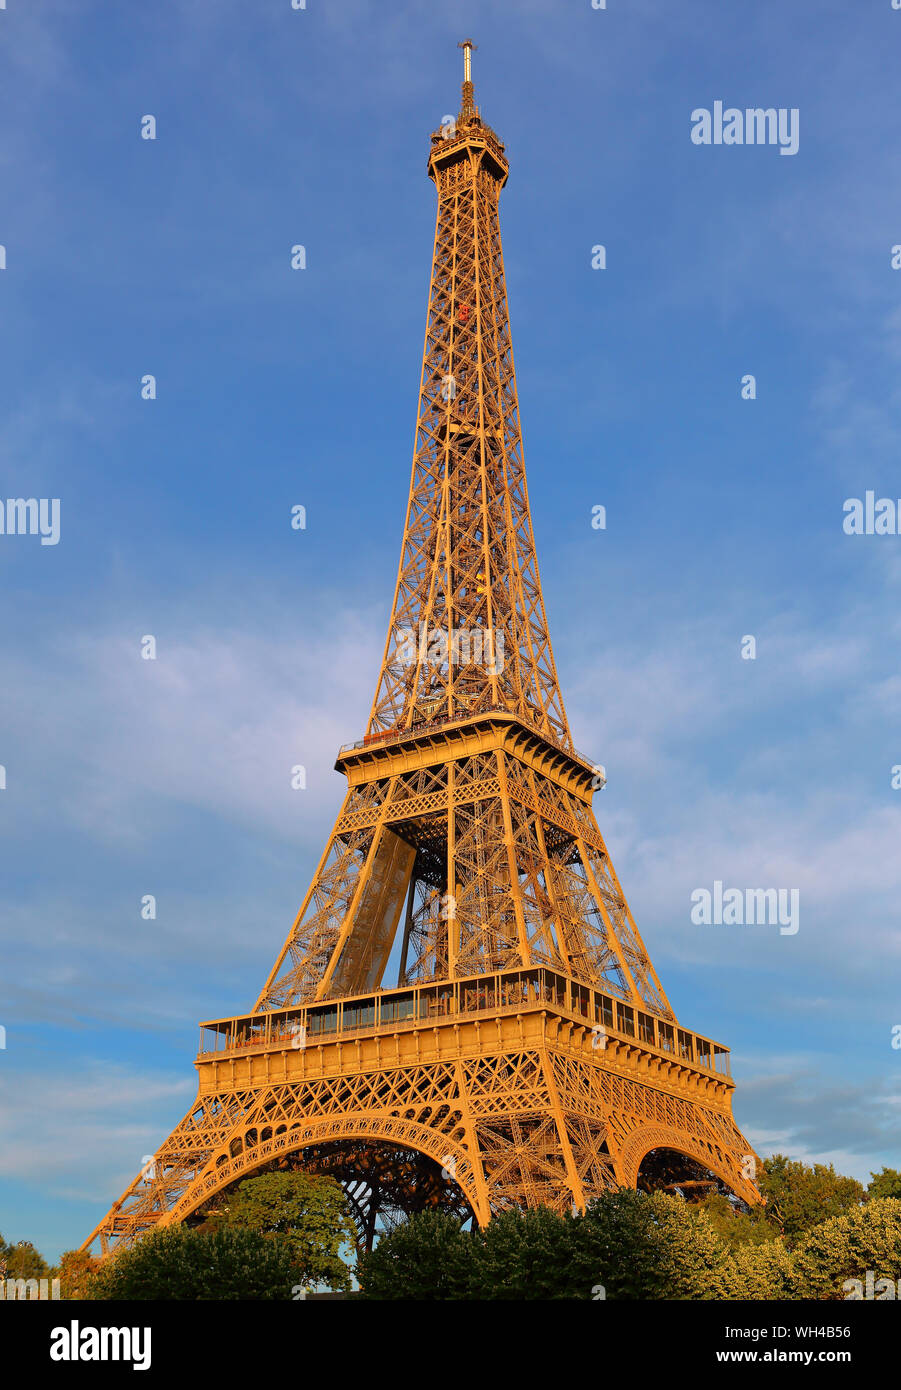 Vue de la Tour Eiffel depuis la Seine couleur ocre brun architecture métallique XIXeme siècle étages tourisme site ciel bleu soleil arches Stock Photo